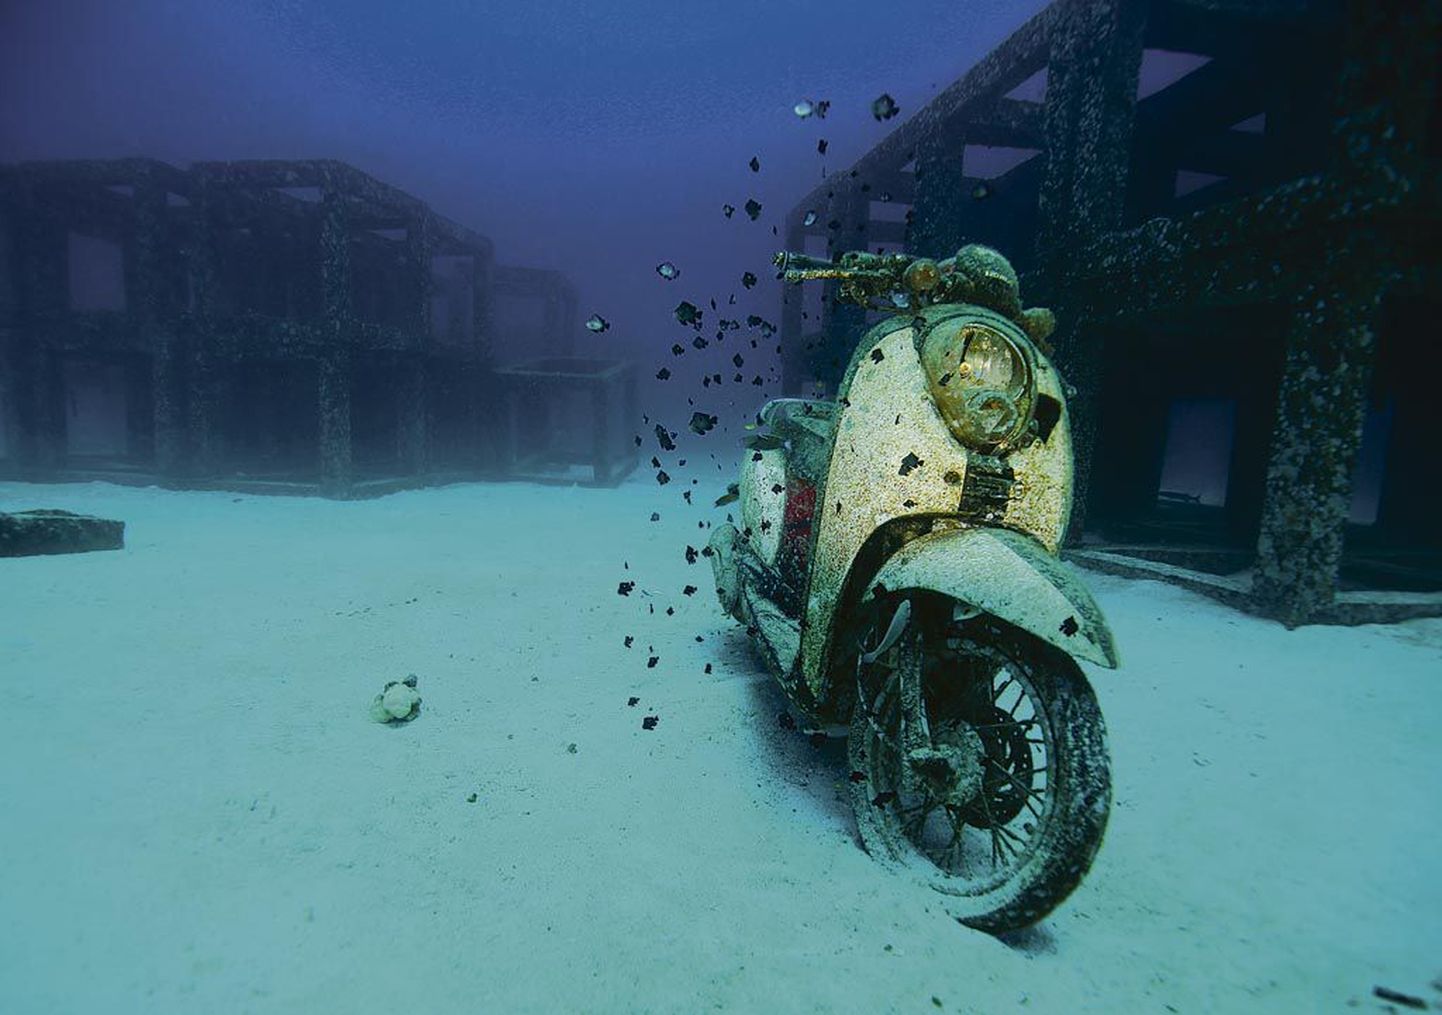 Valdur Maibachi võidufoto “Allveeroller” on kui avastus veealusest maailmast.